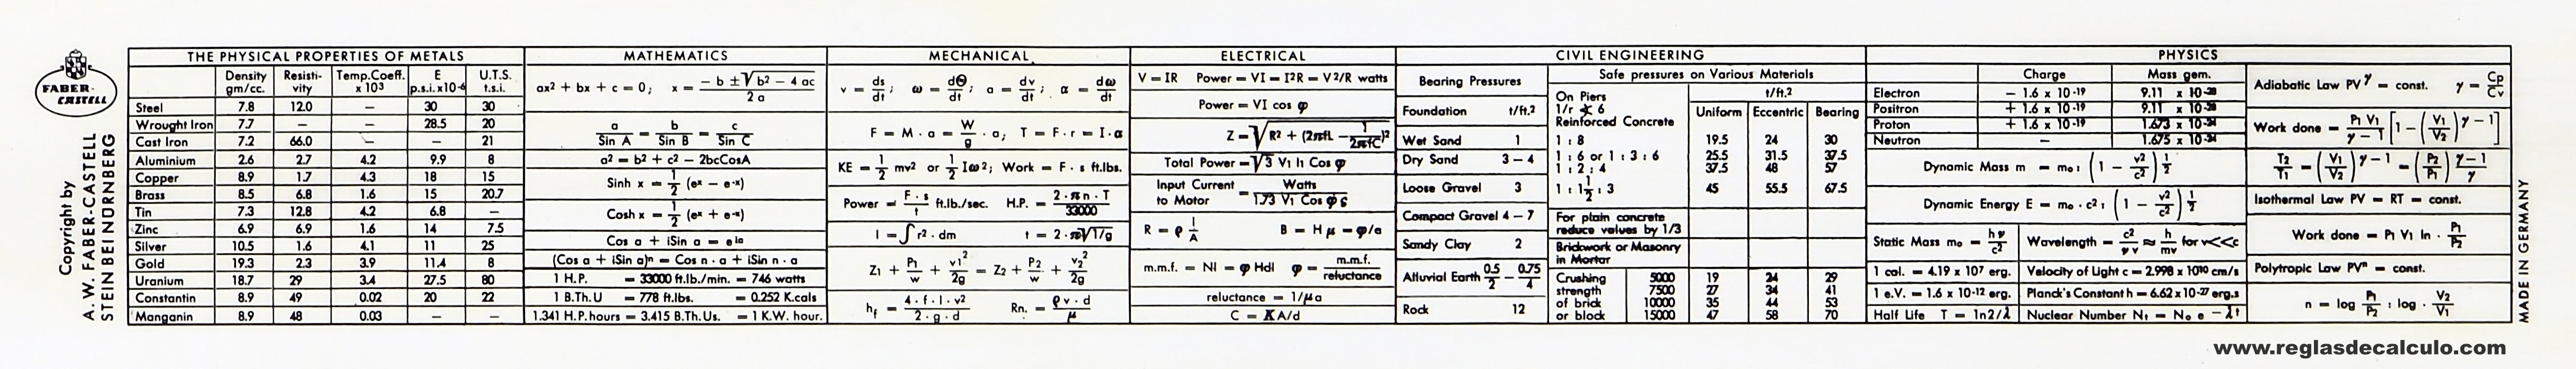 Faber Castell 111/98 Electro Regla de Calculo Slide rule